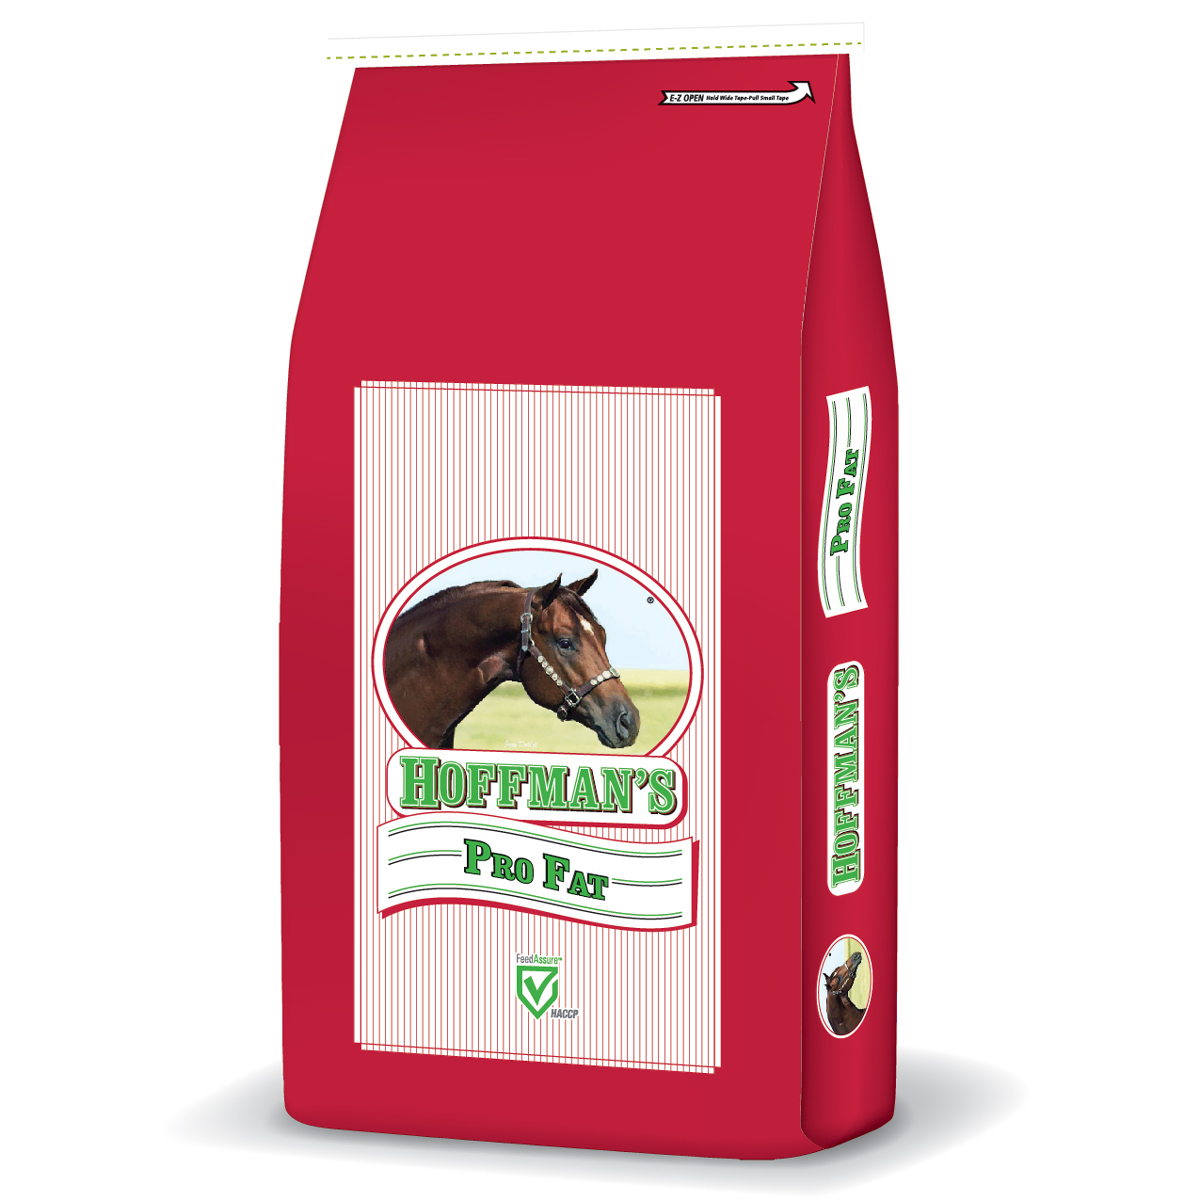 Hoffman's 16% ProFat Horse Feed - 15 kg